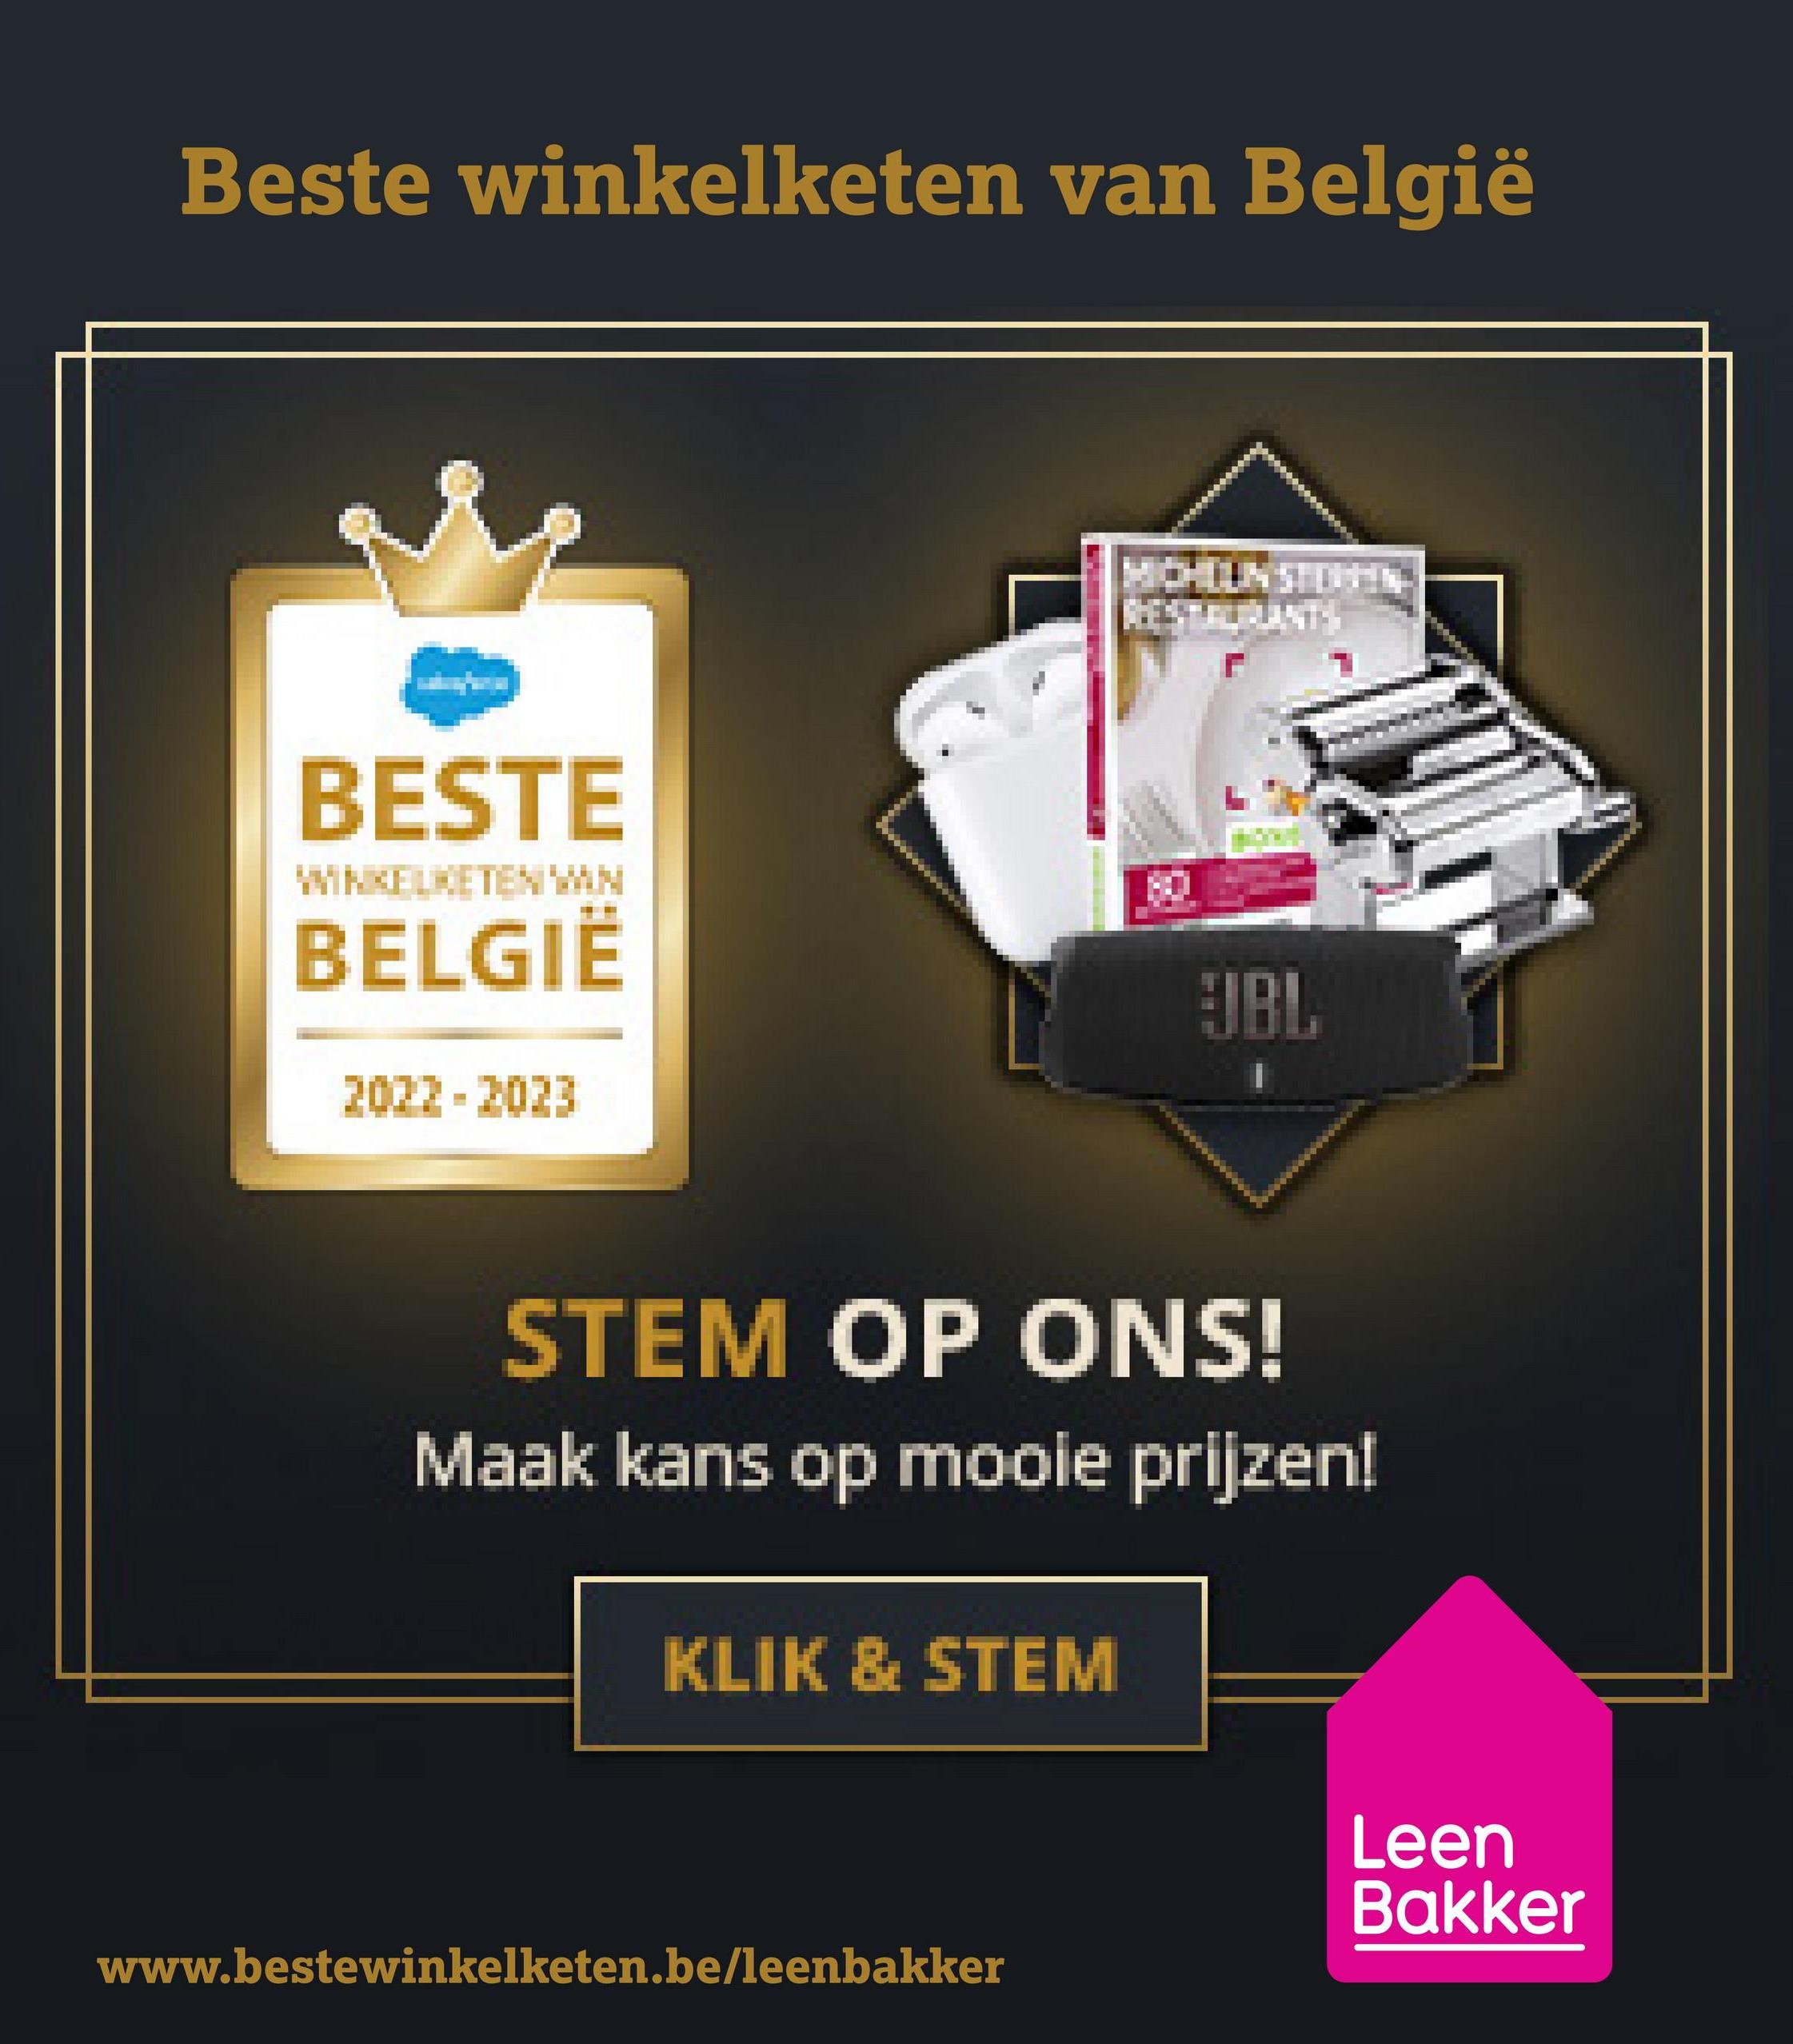 Beste winkelketen van België
BESTE
WINKELKETEN VAN
BELGIË
JBL
2022 2023
=
STEM OP ONS!
Maak kans op mooie prijzen!
KLIK & STEM
www.bestewinkelketen.be/leenbakker
Leen
Bakker